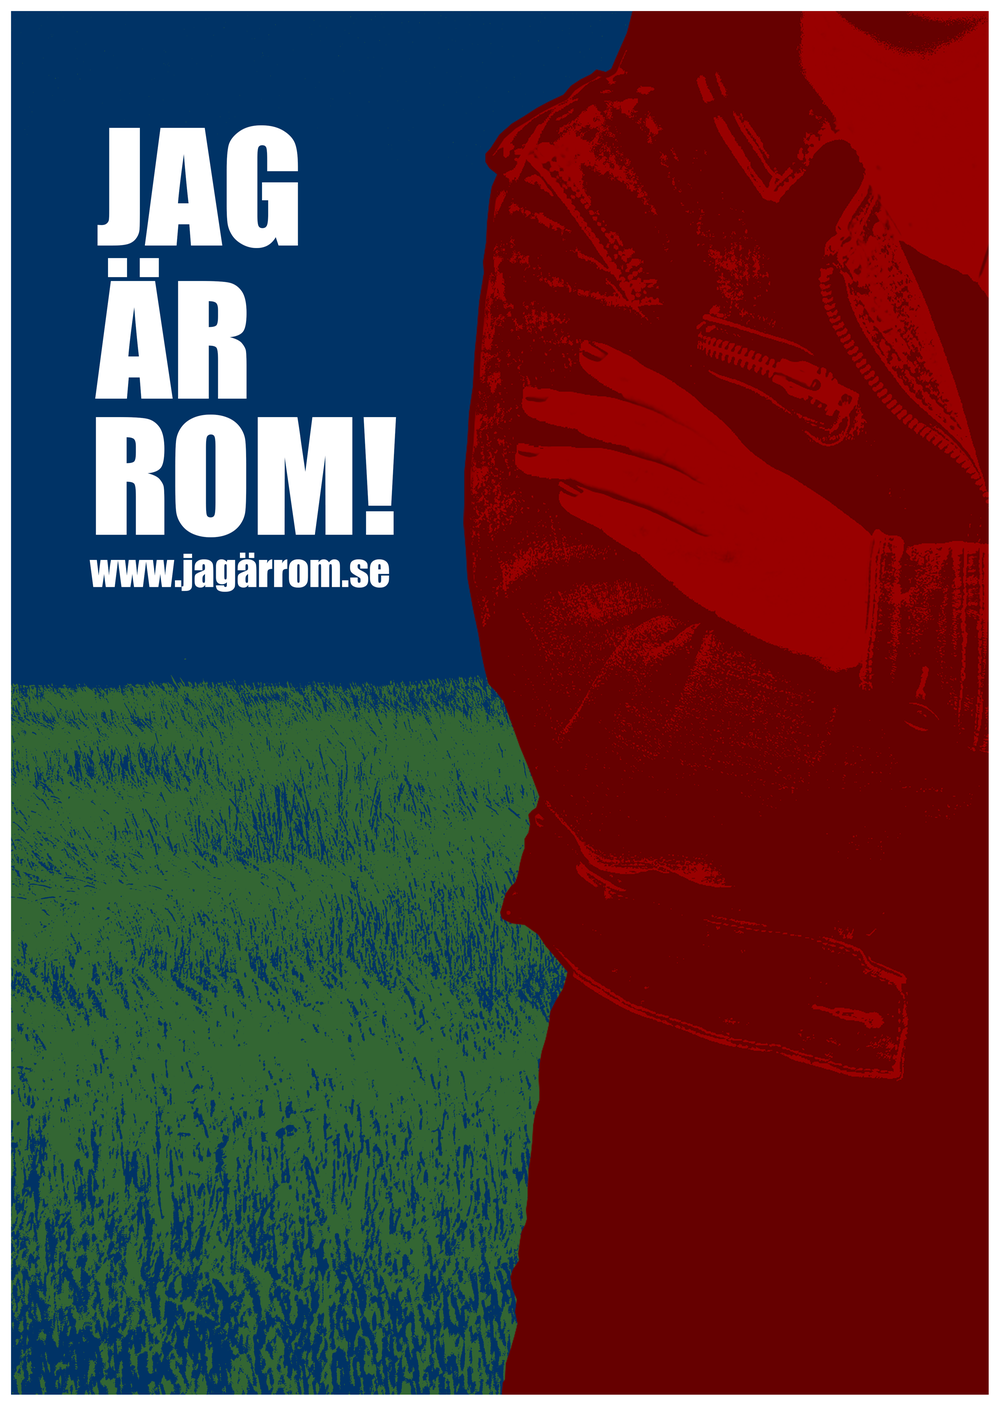 Röd silhuett av en person mot en blågrön bakgrund, till vänster texten "Jag är rom" och adressen till kampanjens hemsida.